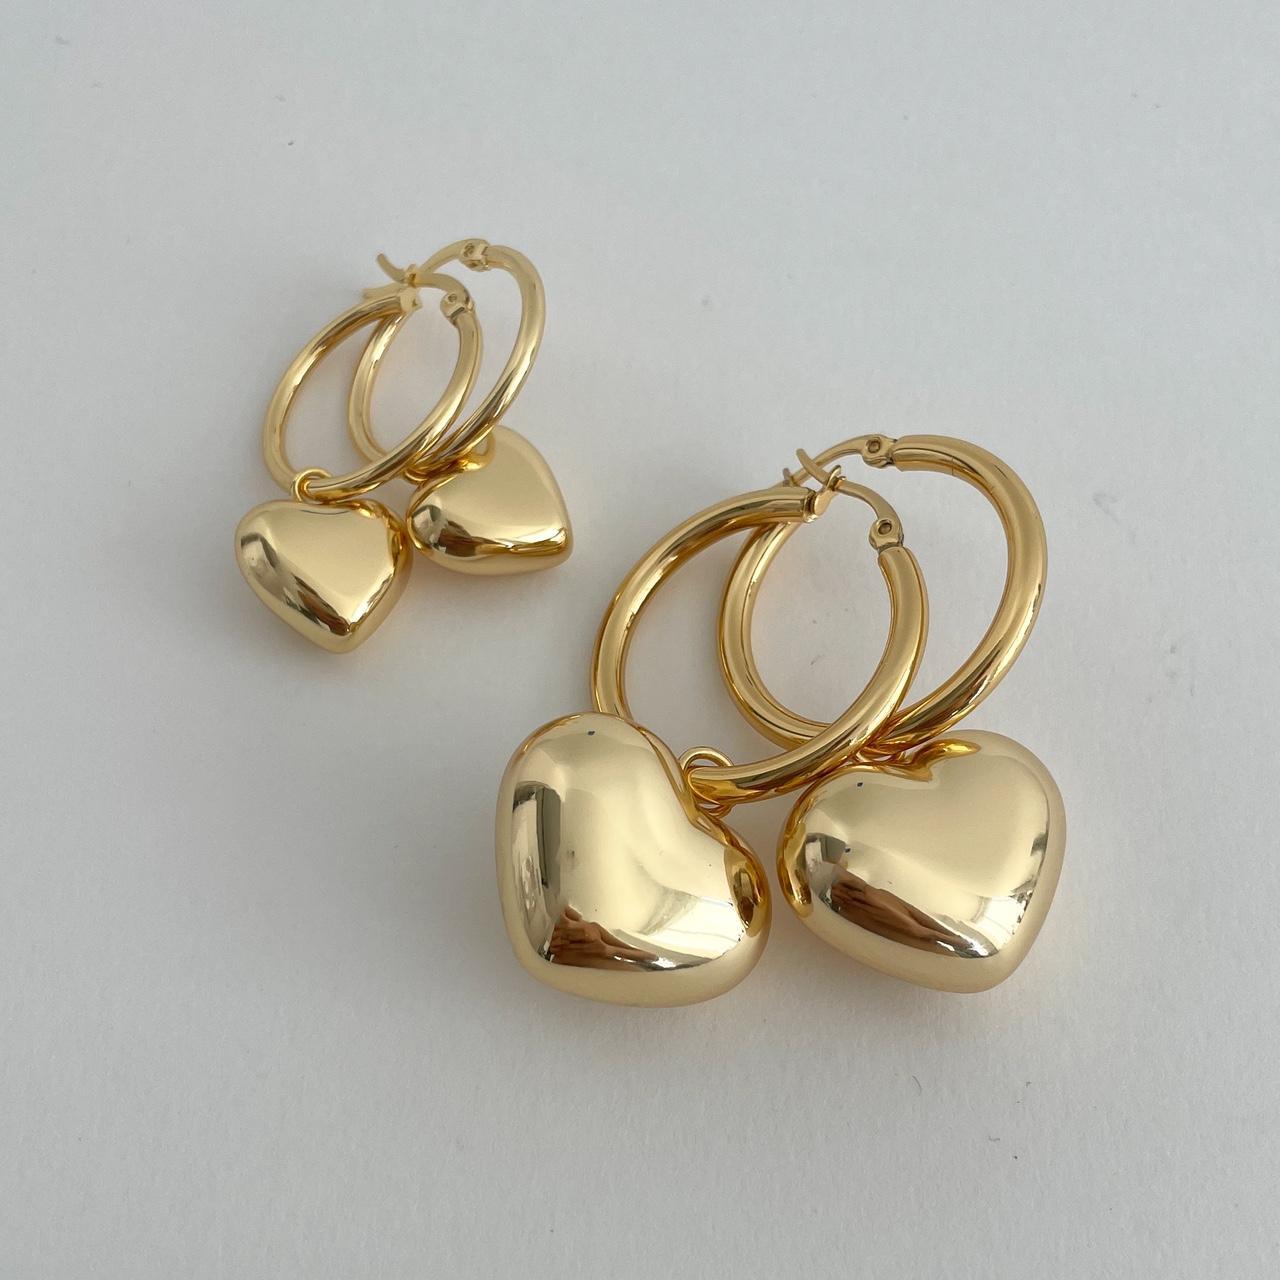 Gold Hoop Earrings Puffy Heart Earrings 18K gold... - Depop